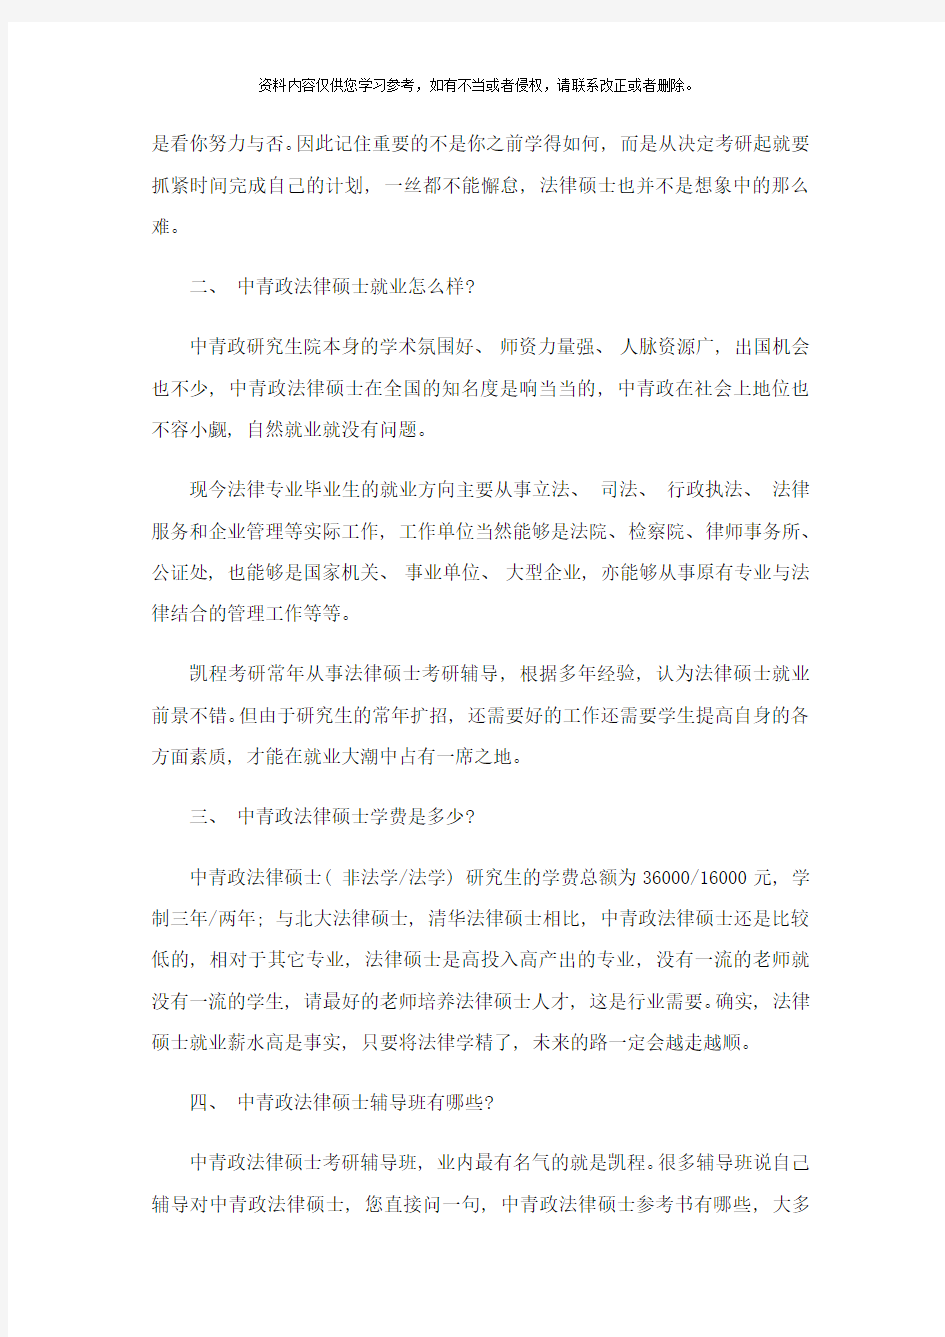 中国青年政治学院法律硕士考研复试分数线标准到底有多低样本